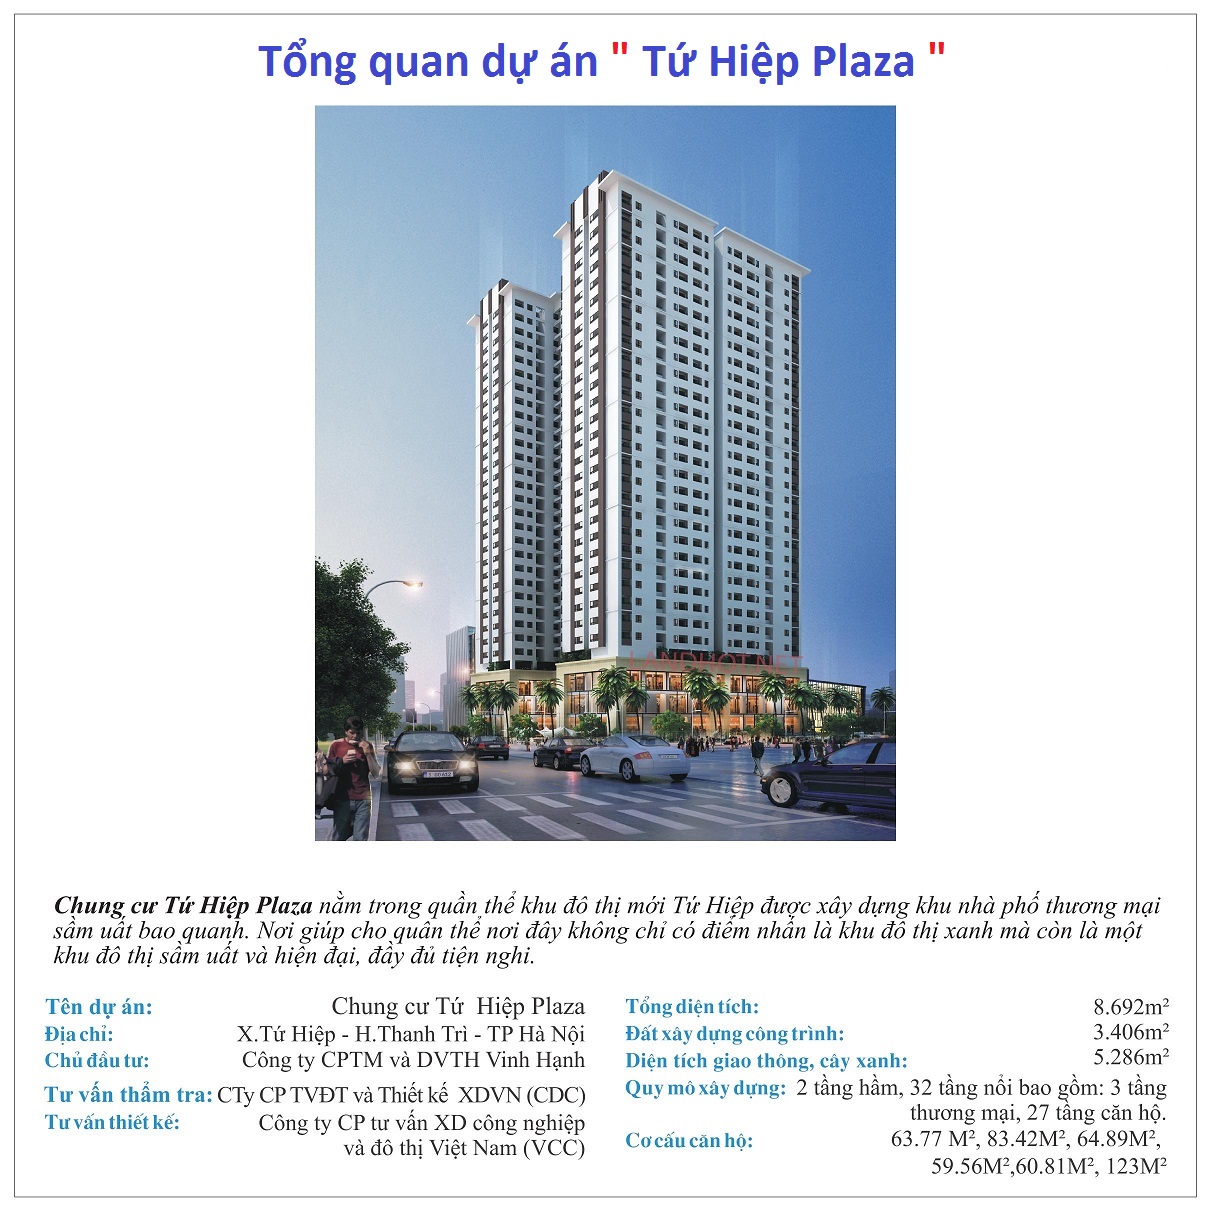 Chính thức nhận đăng kí mua căn hộ tứ hiệp plaza các tầng 9,12 và 15